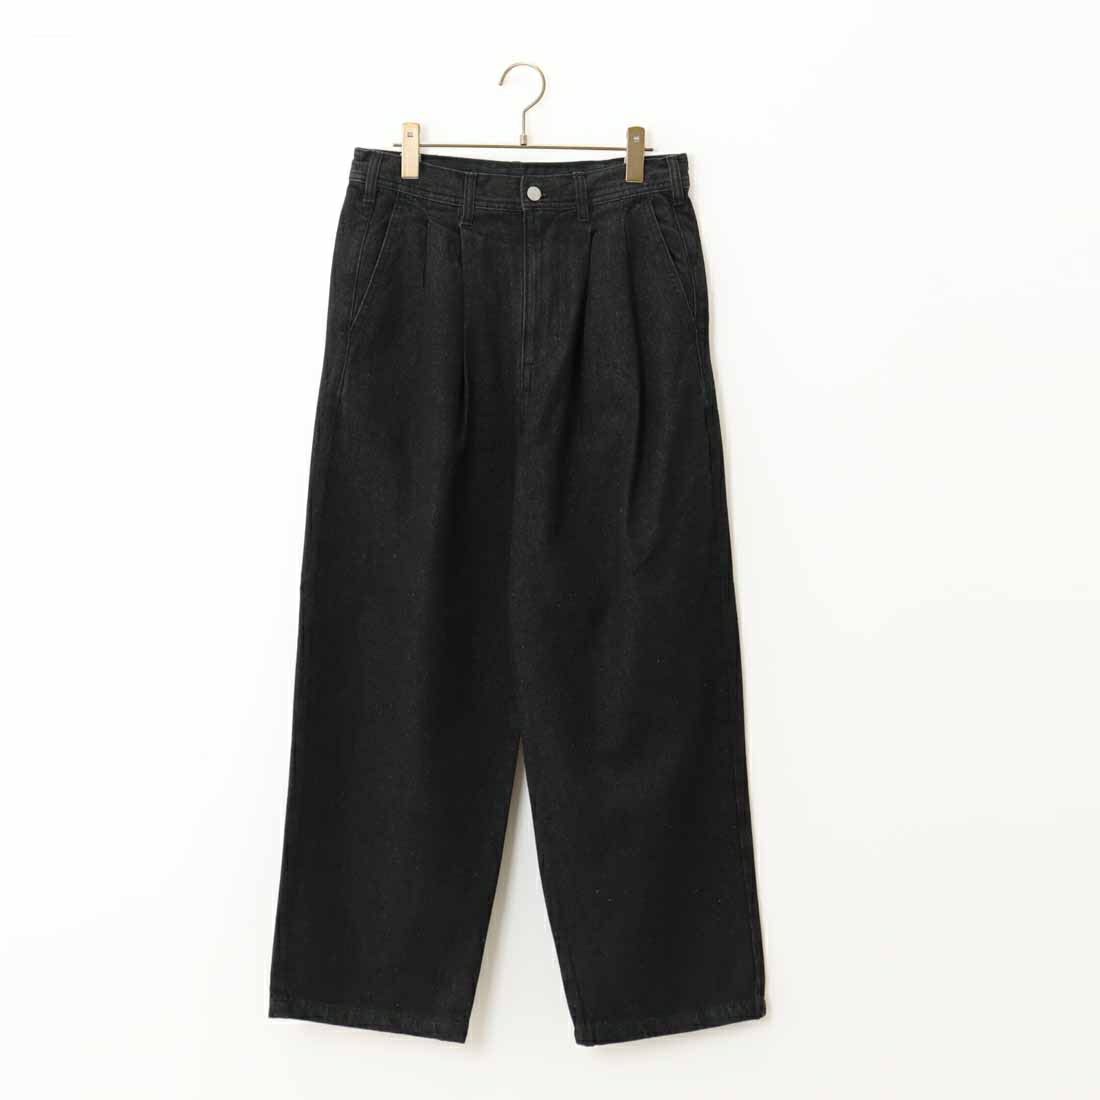 Jeans Factory Clothes [ジーンズファクトリークローズ] 2タックデニムワイドパンツ [JFC-224-052] BLACK USED